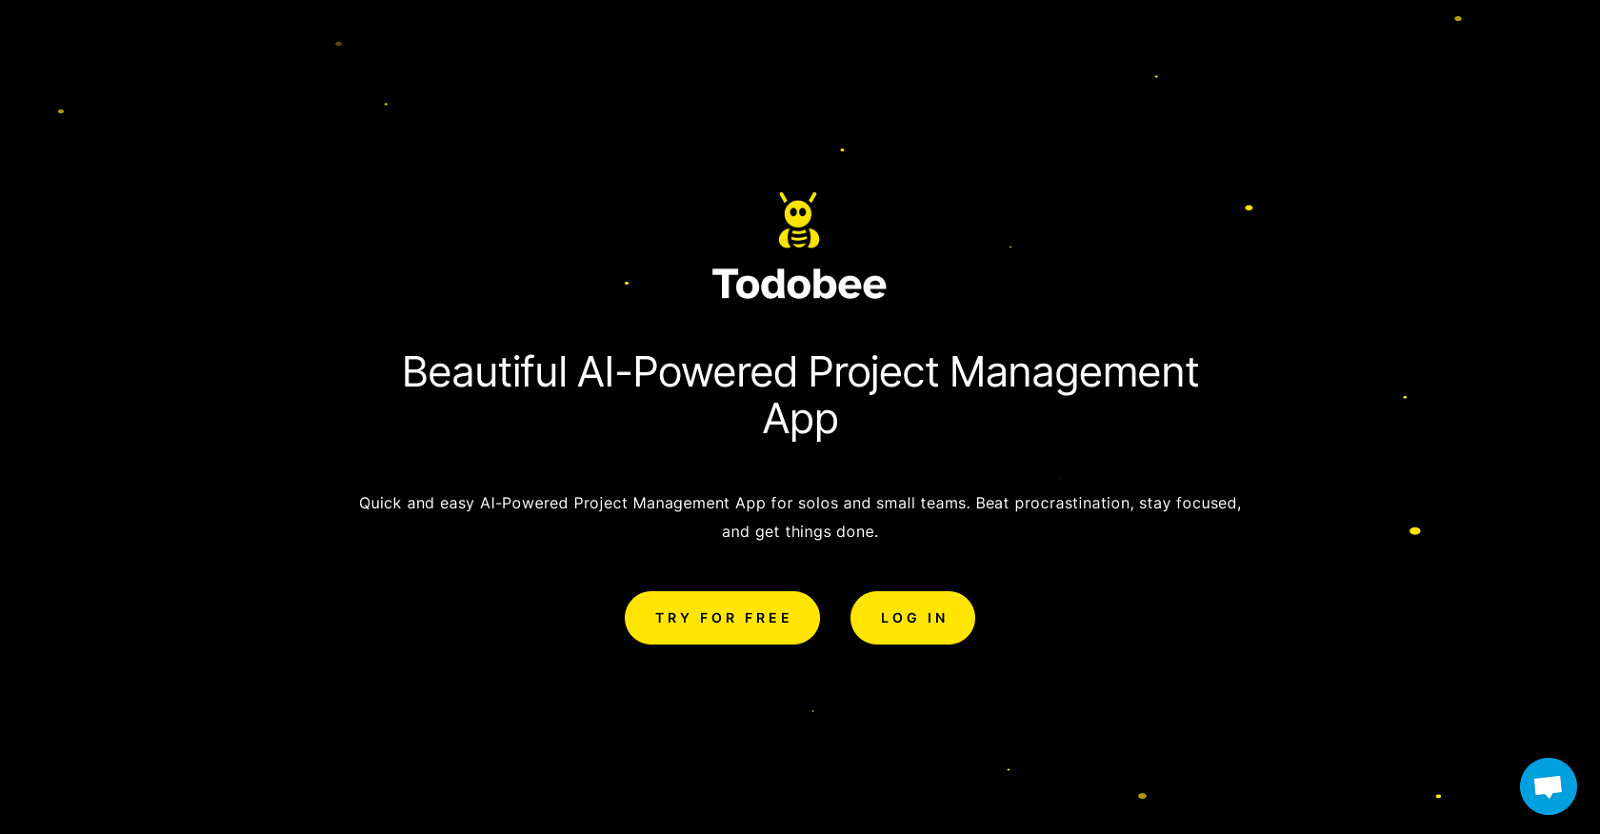 Todobee website